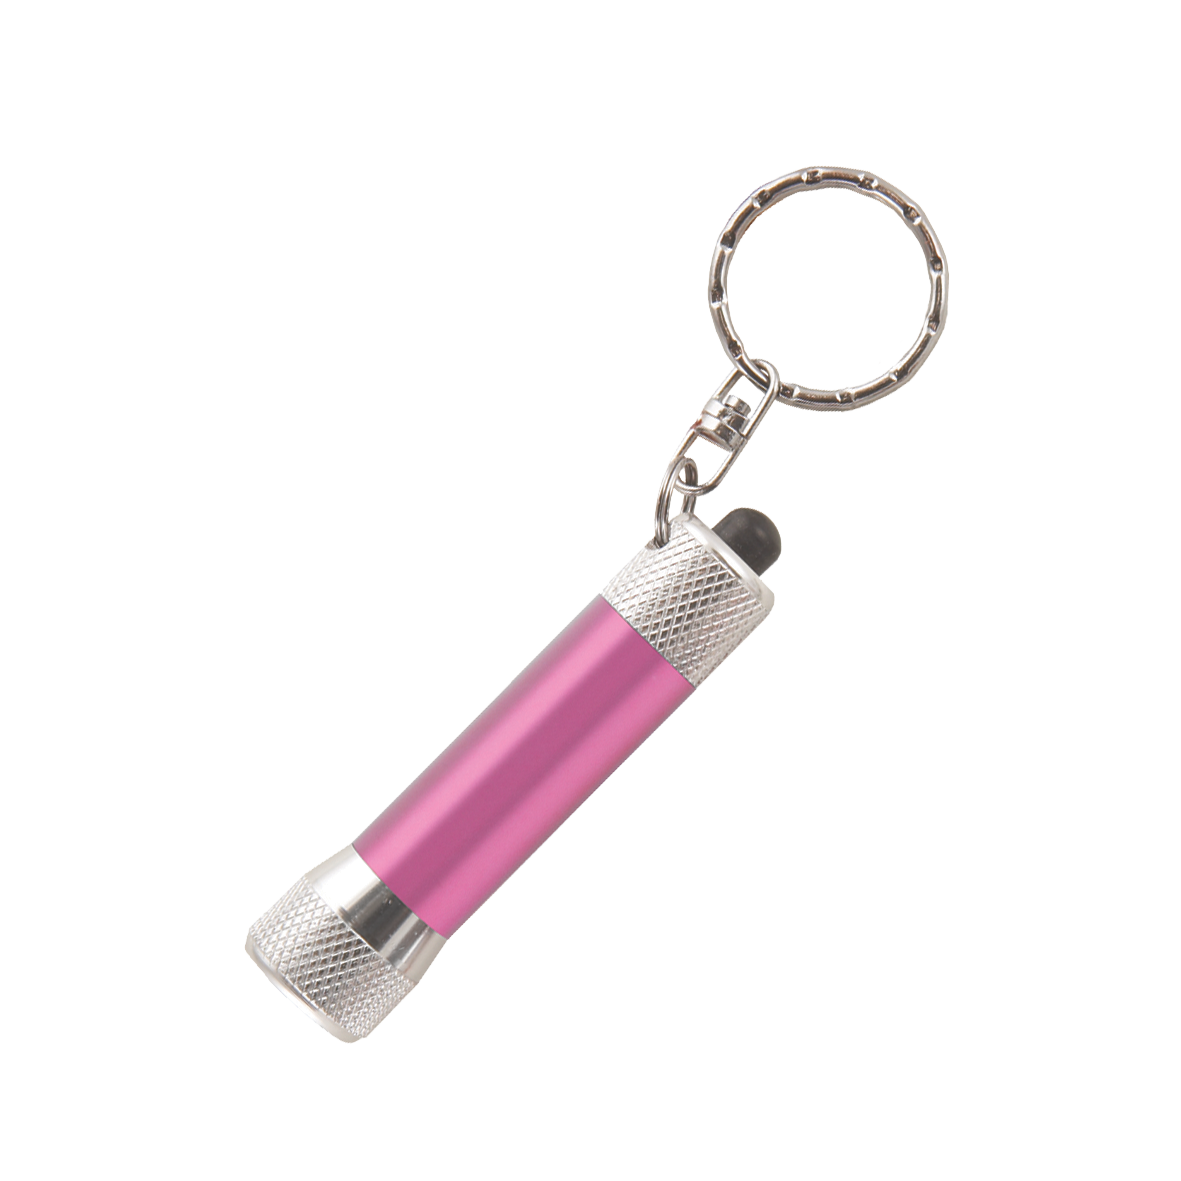 LED-Taschenlampe / Schlüsselanhänger mit Batterien inkl. Lasergravur